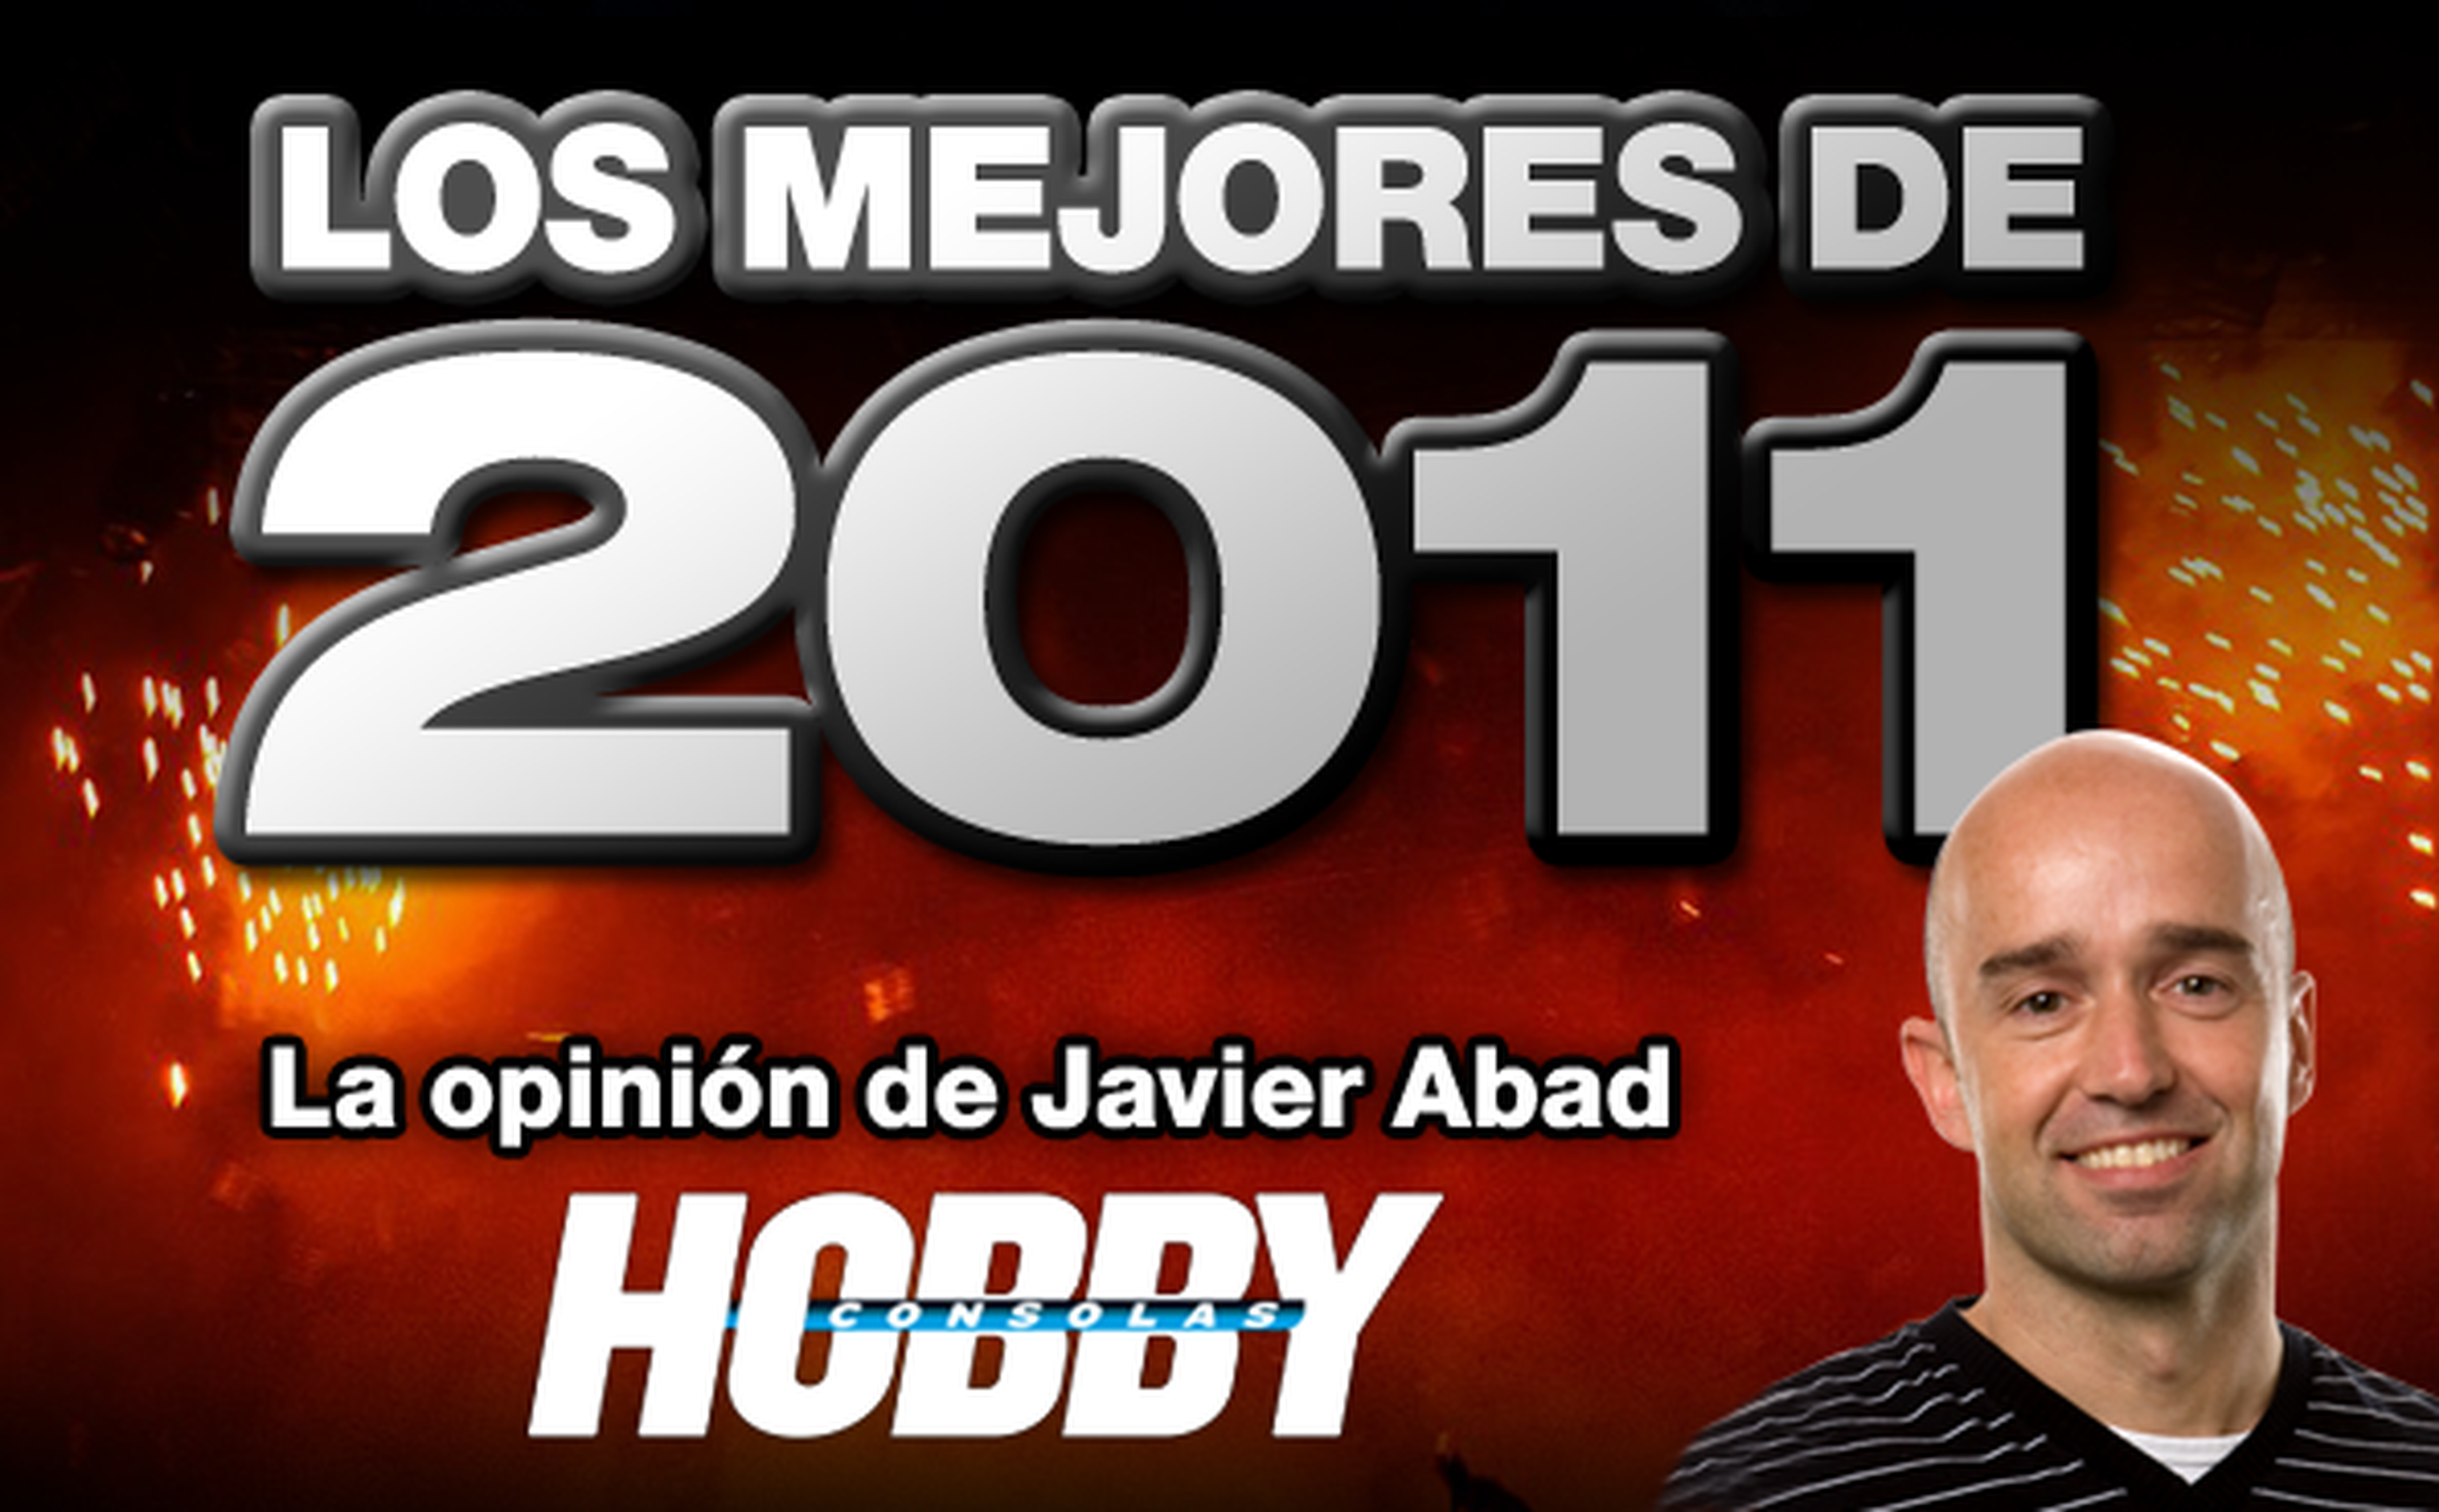 Los mejores de 2011: Javier Abad